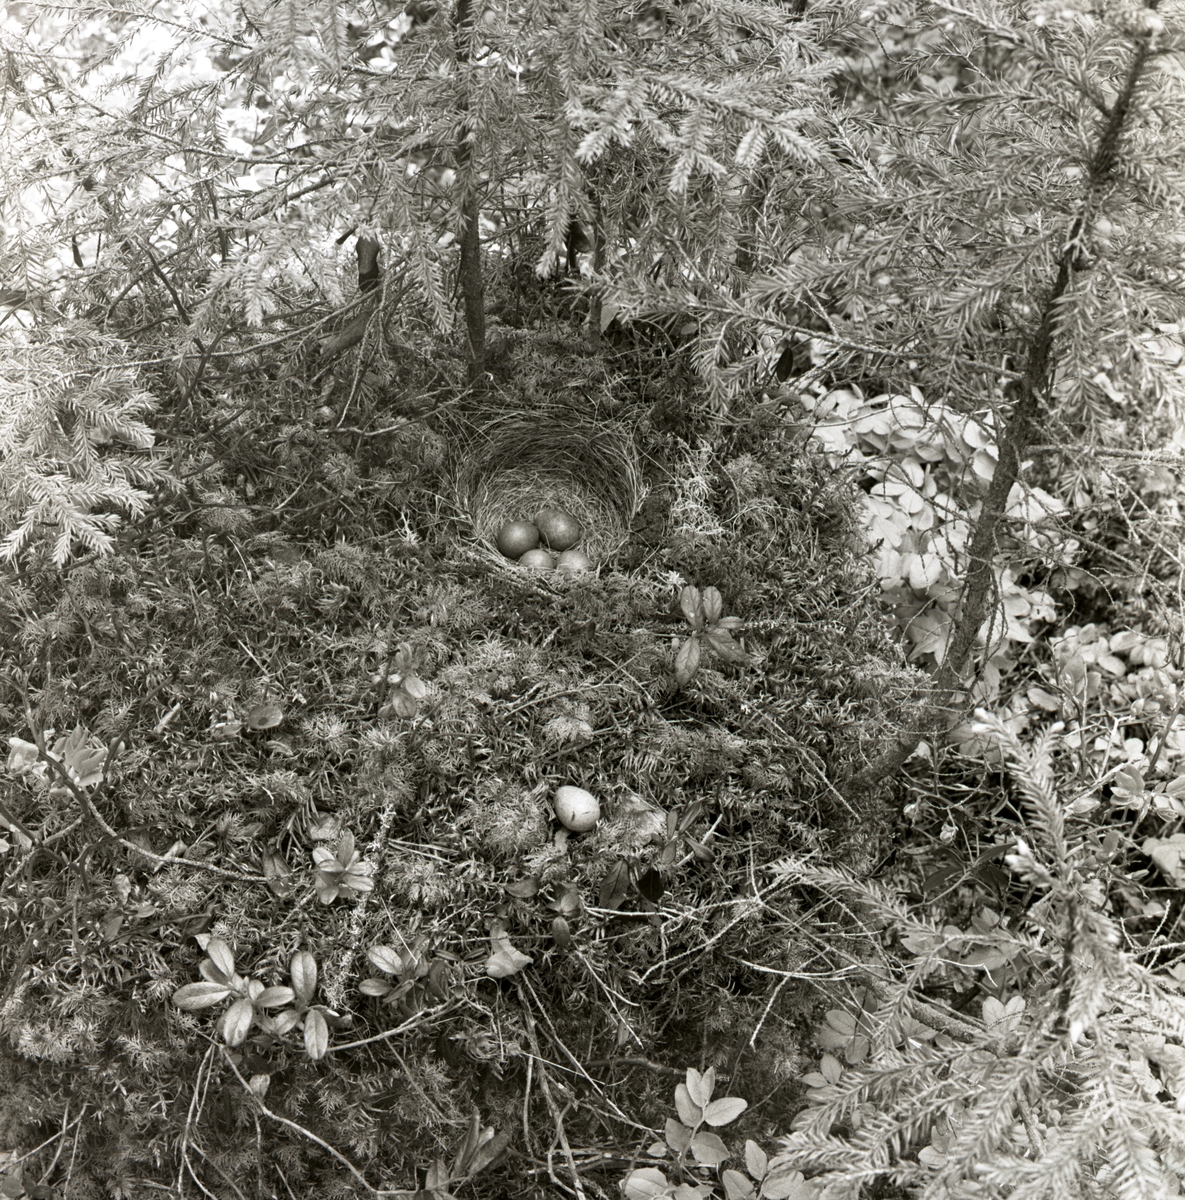 Ett rödvingetrastbo med ägg är omgivet av granar, 1961.